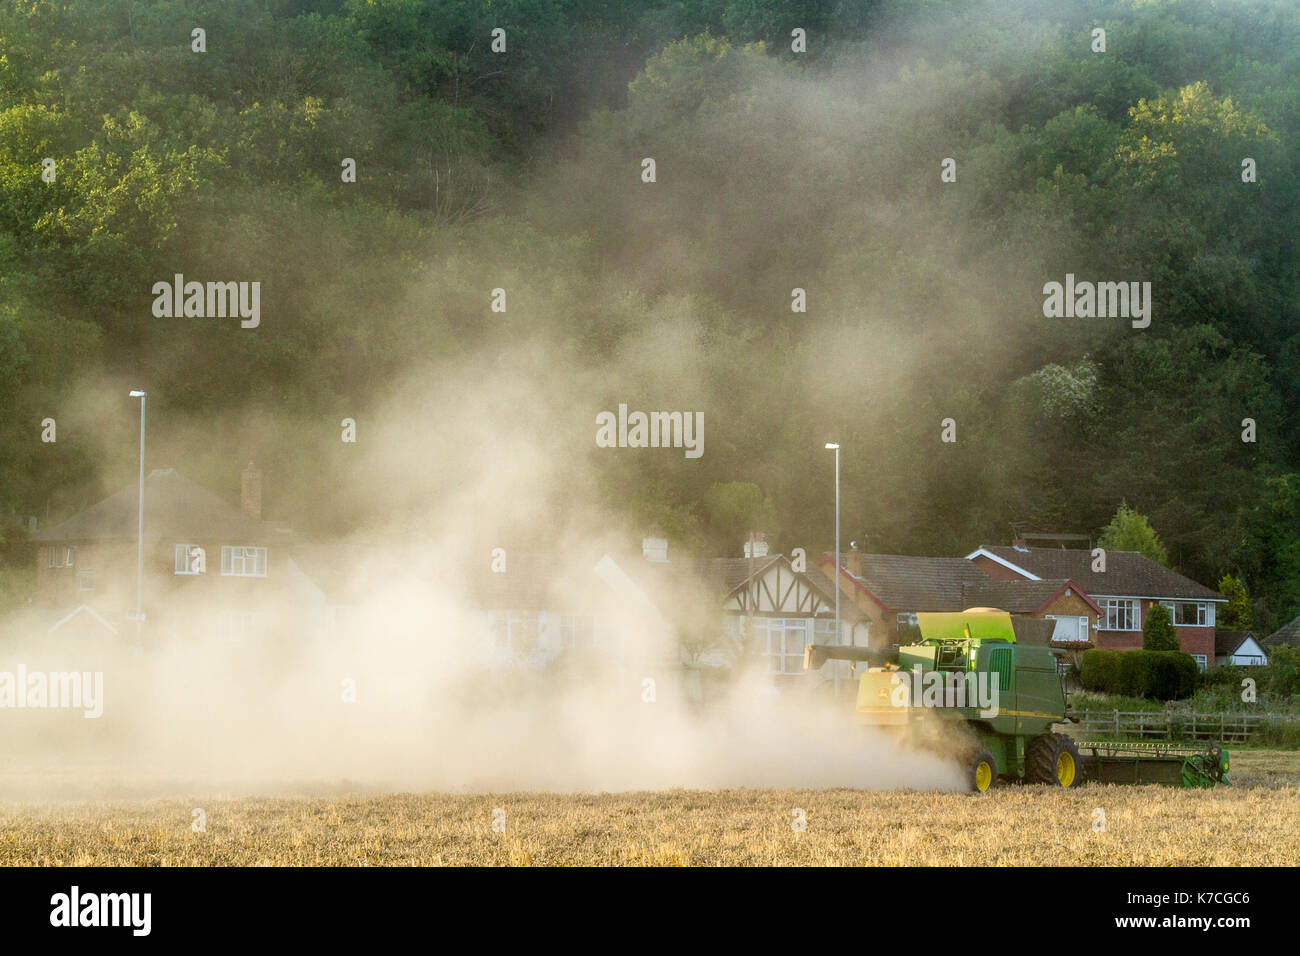 Les questions de l'environnement rural. La pollution de l'air à la campagne. Moissonneuse-batteuse, entraînant la poussière de grain de blé près de l'habitation, Lancashire, England, UK Banque D'Images